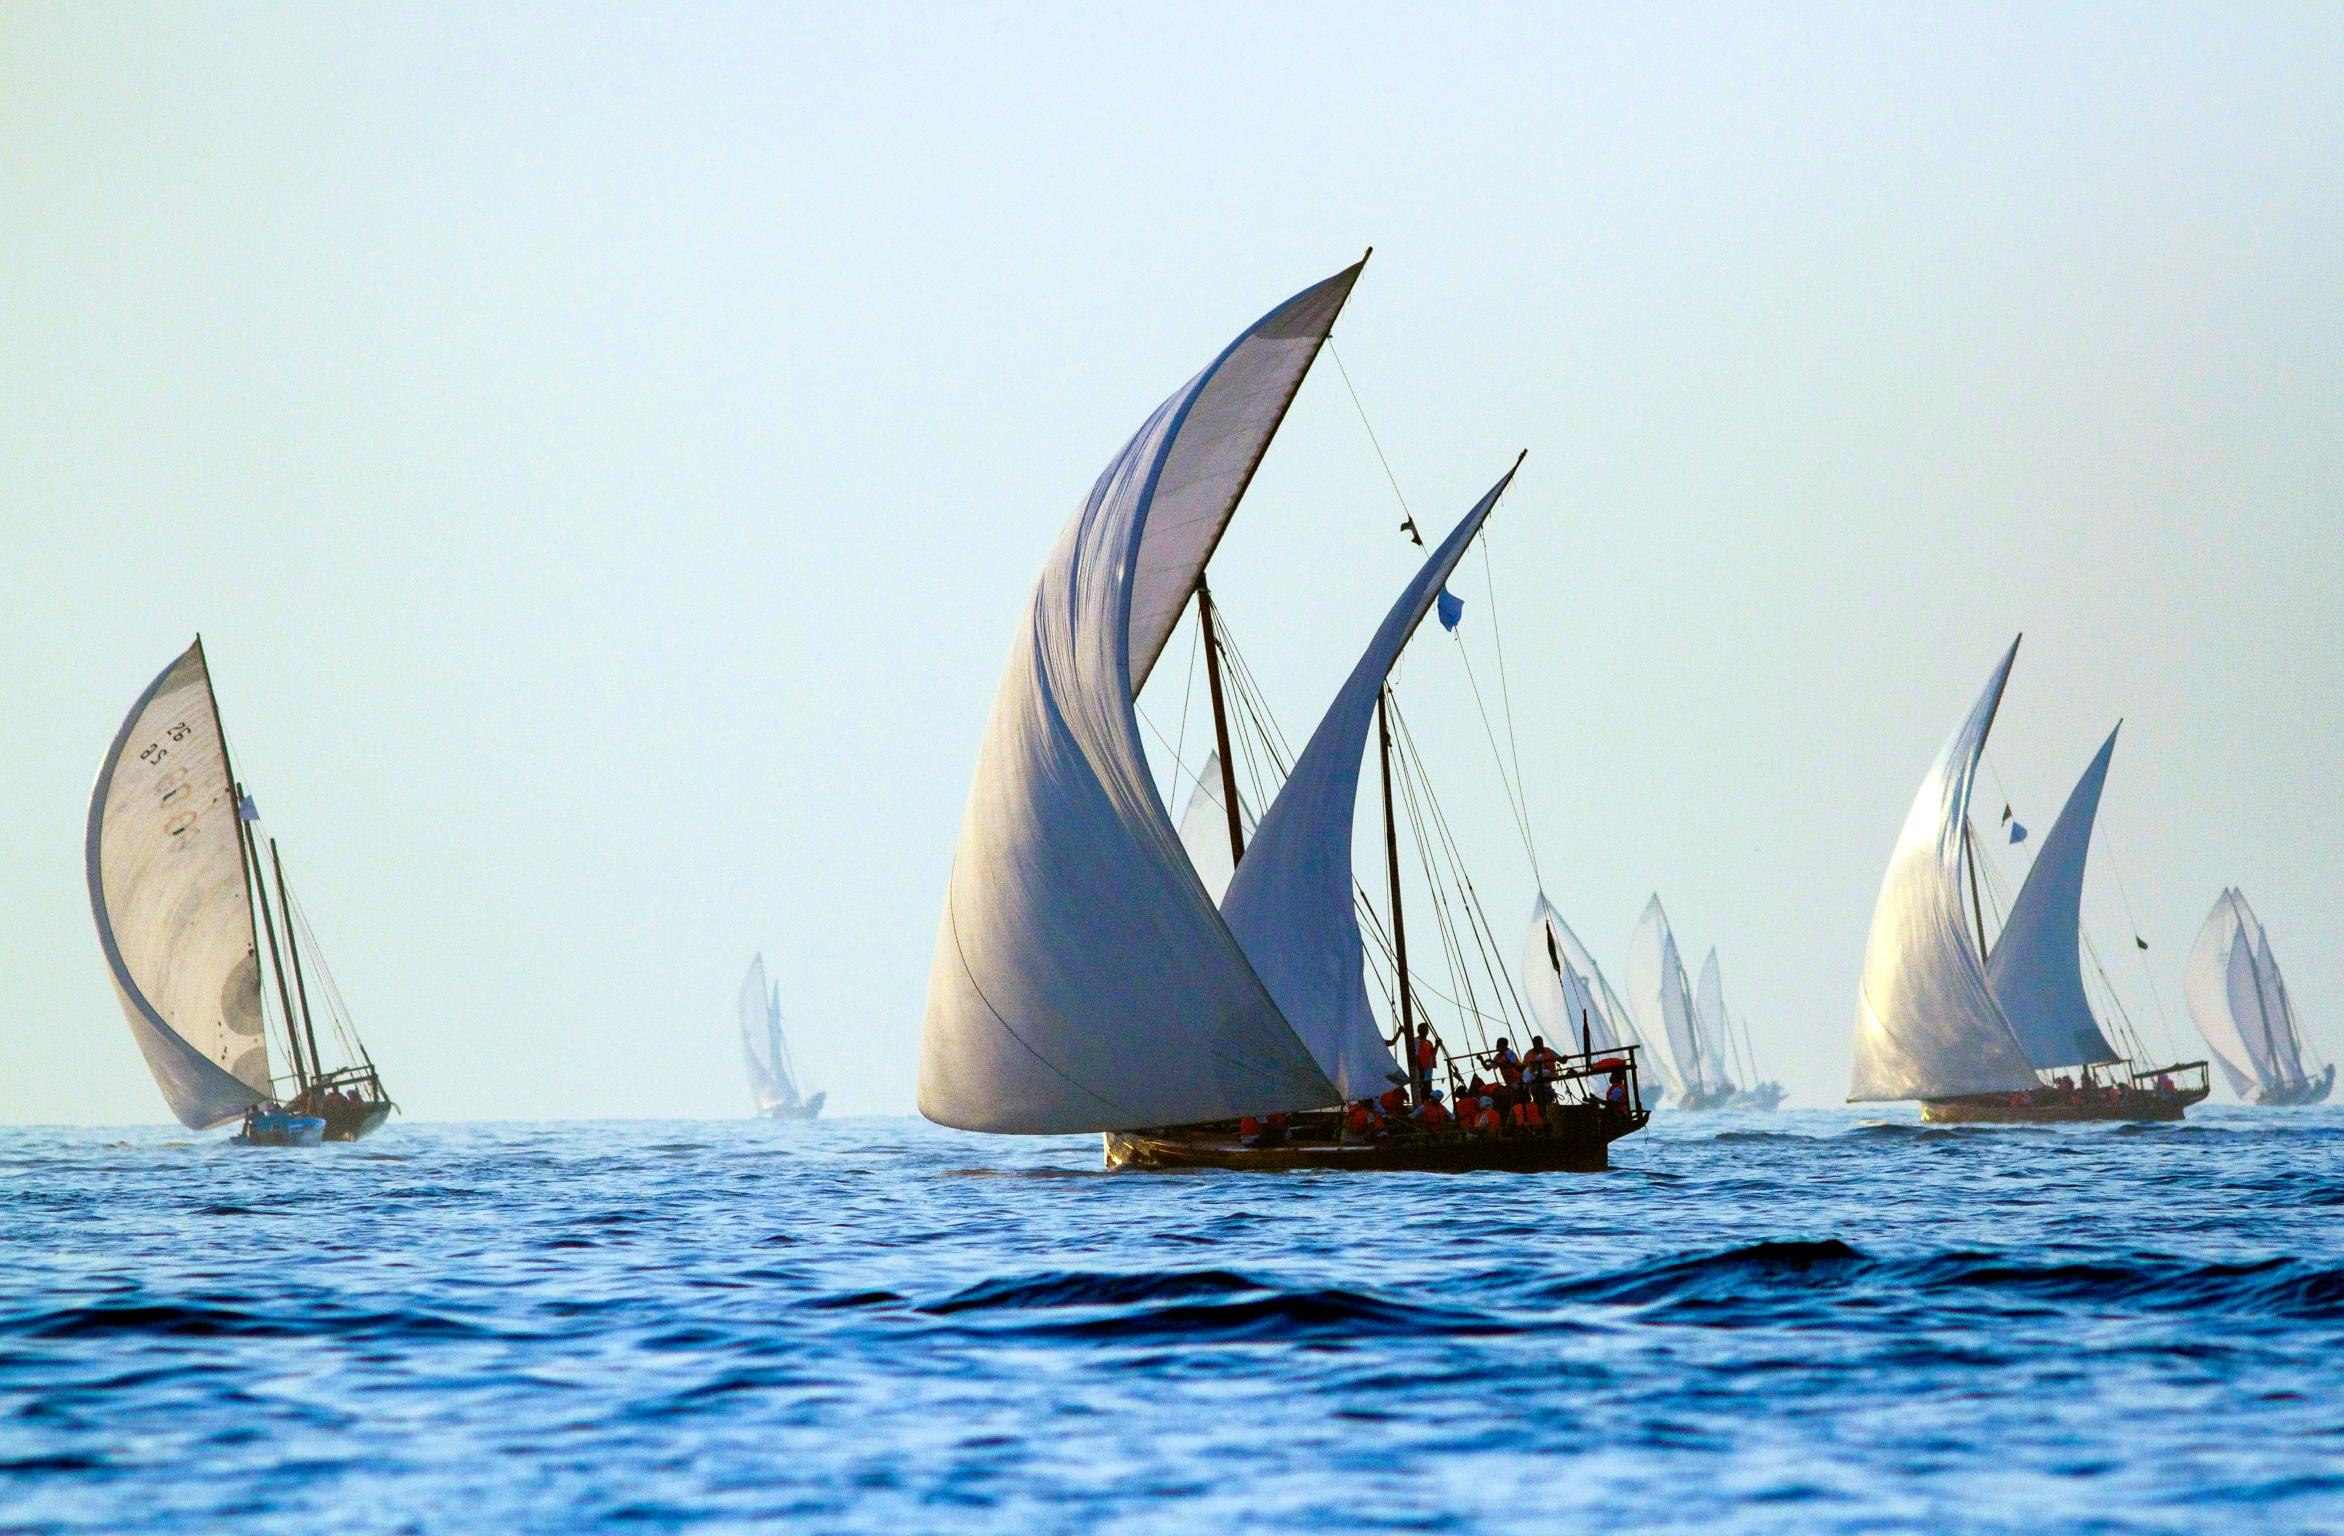 Inspiration
La famille de meubles Dhow fait référence aux voiles ondulantes des bateaux traditionnels omanais, un élément important de l'histoire maritime de la nation.

Artisanat
Bethan a réimaginé le mouvement des voiles dans un motif dessiné